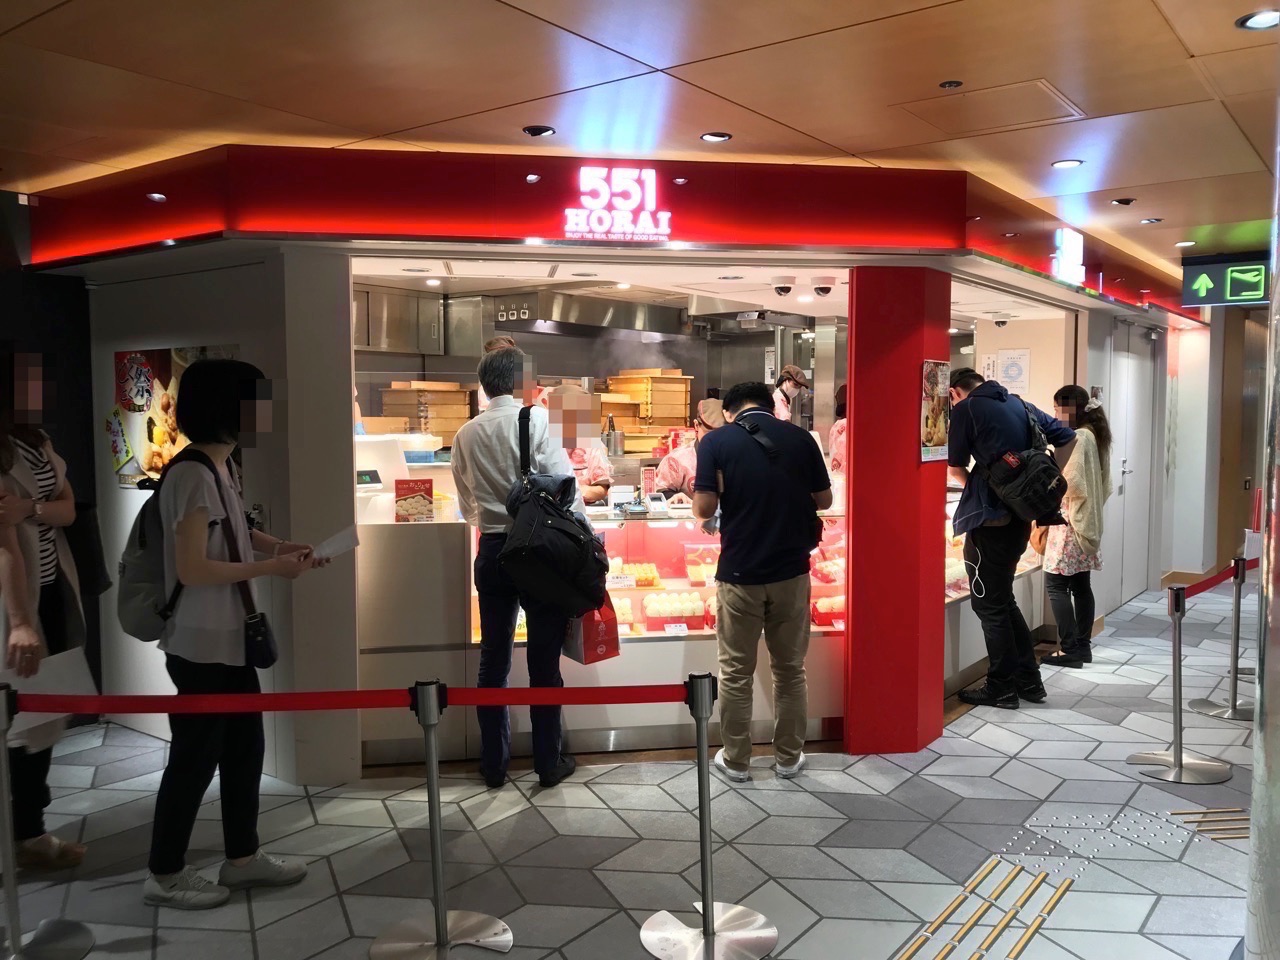 551蓬莱の激ウマ豚まんを大阪国際空港 伊丹 で購入する時の注意点 モノ好き ブログ